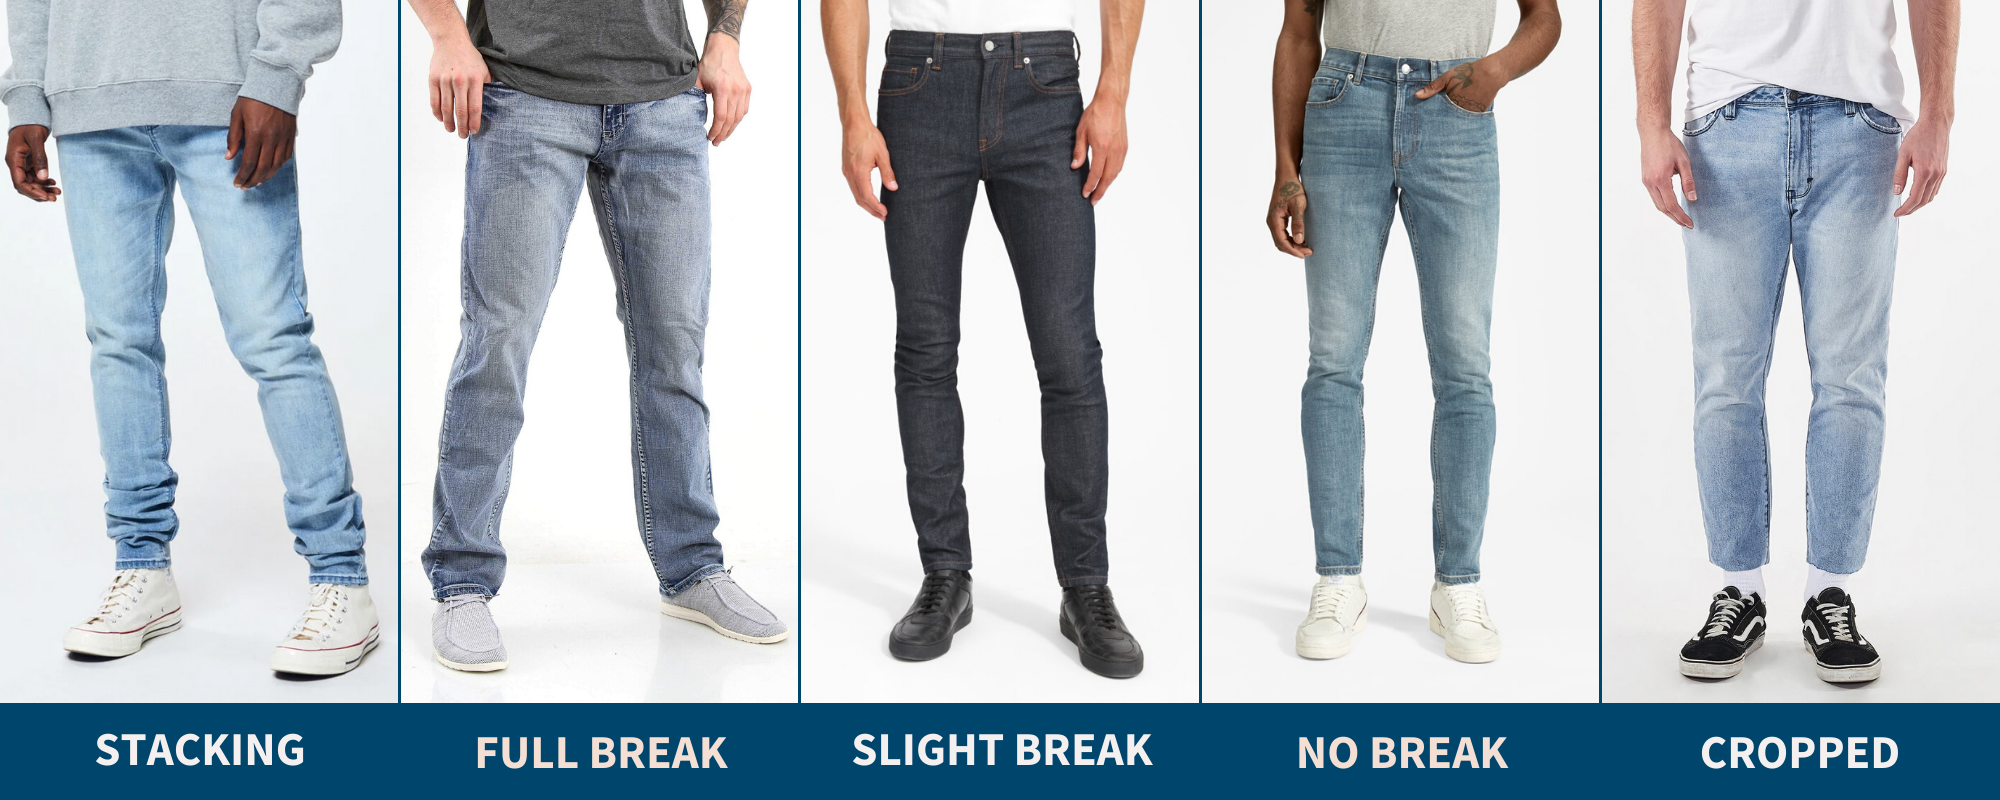 best jeans for short stocky guys